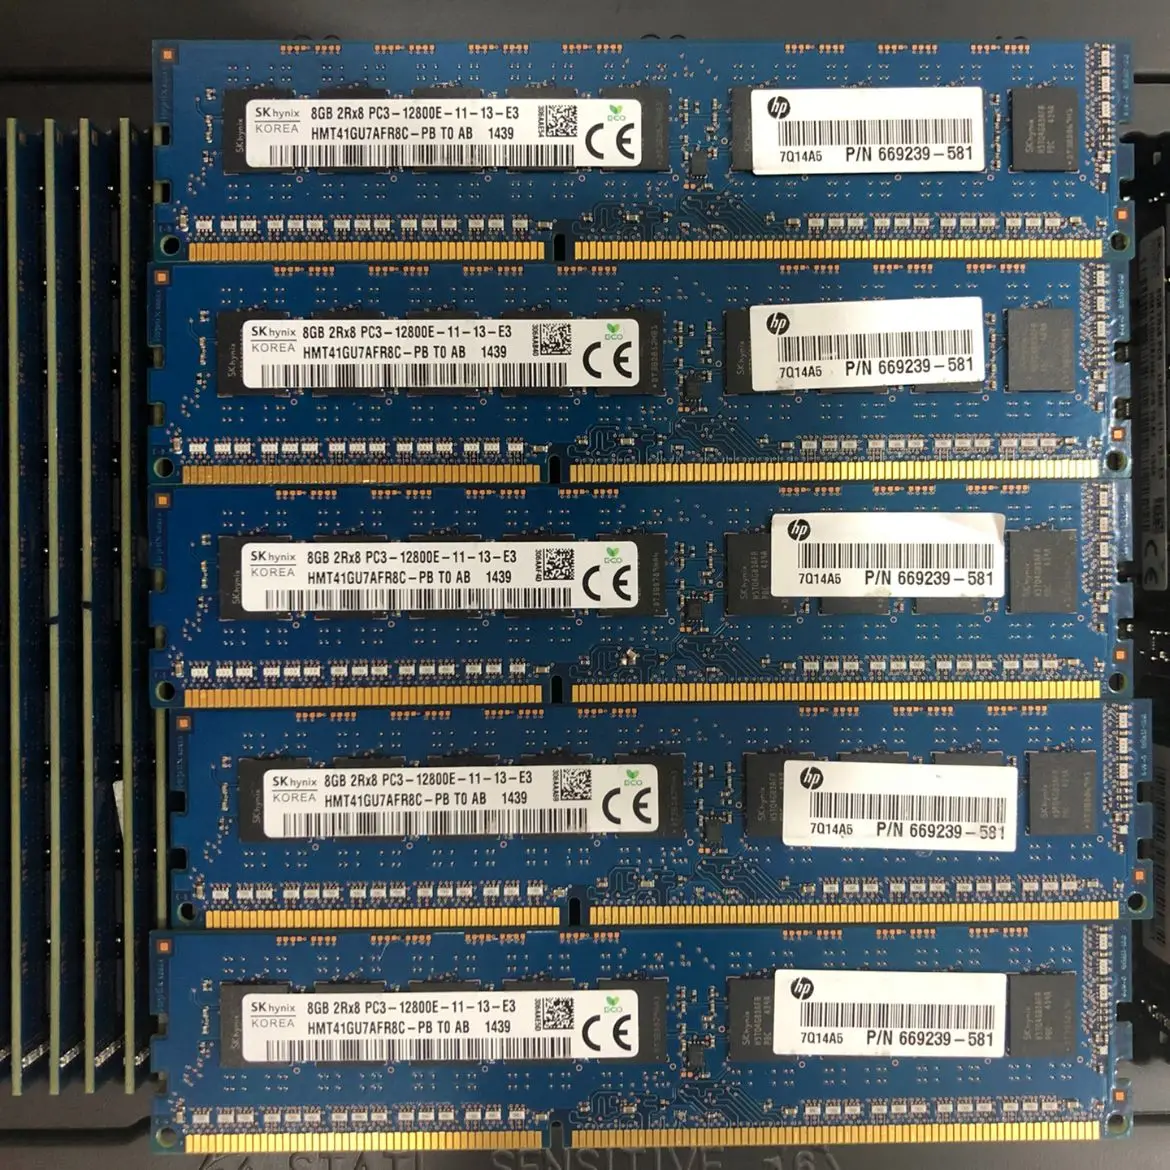 

Серверная оперативная память SKhynix DDR3 UDIMM 240PIN 8GB 1600MHZ для настольного ПК ddr3 8GB 2RX8 PC3-12800E-11-13-E3 ddr3 8gb 1600mhz 1 шт.